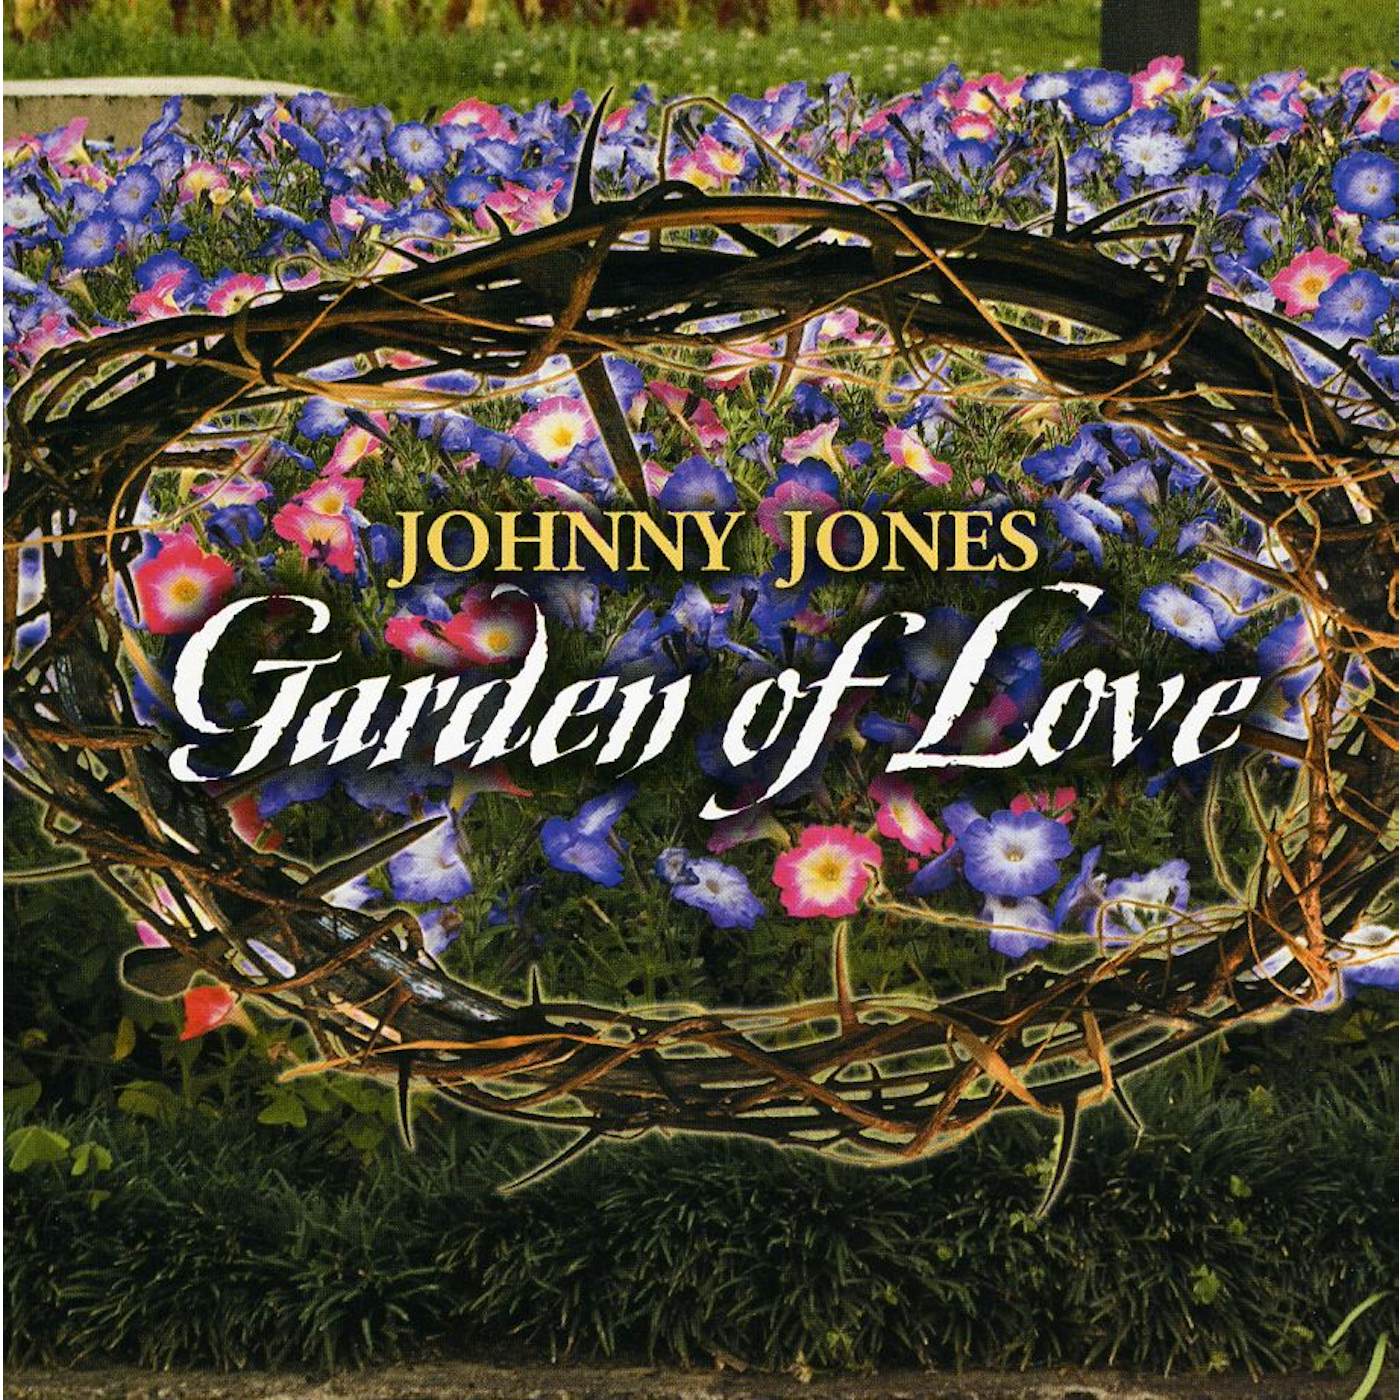 Johnny Jones GARDEN OF LOVE CD